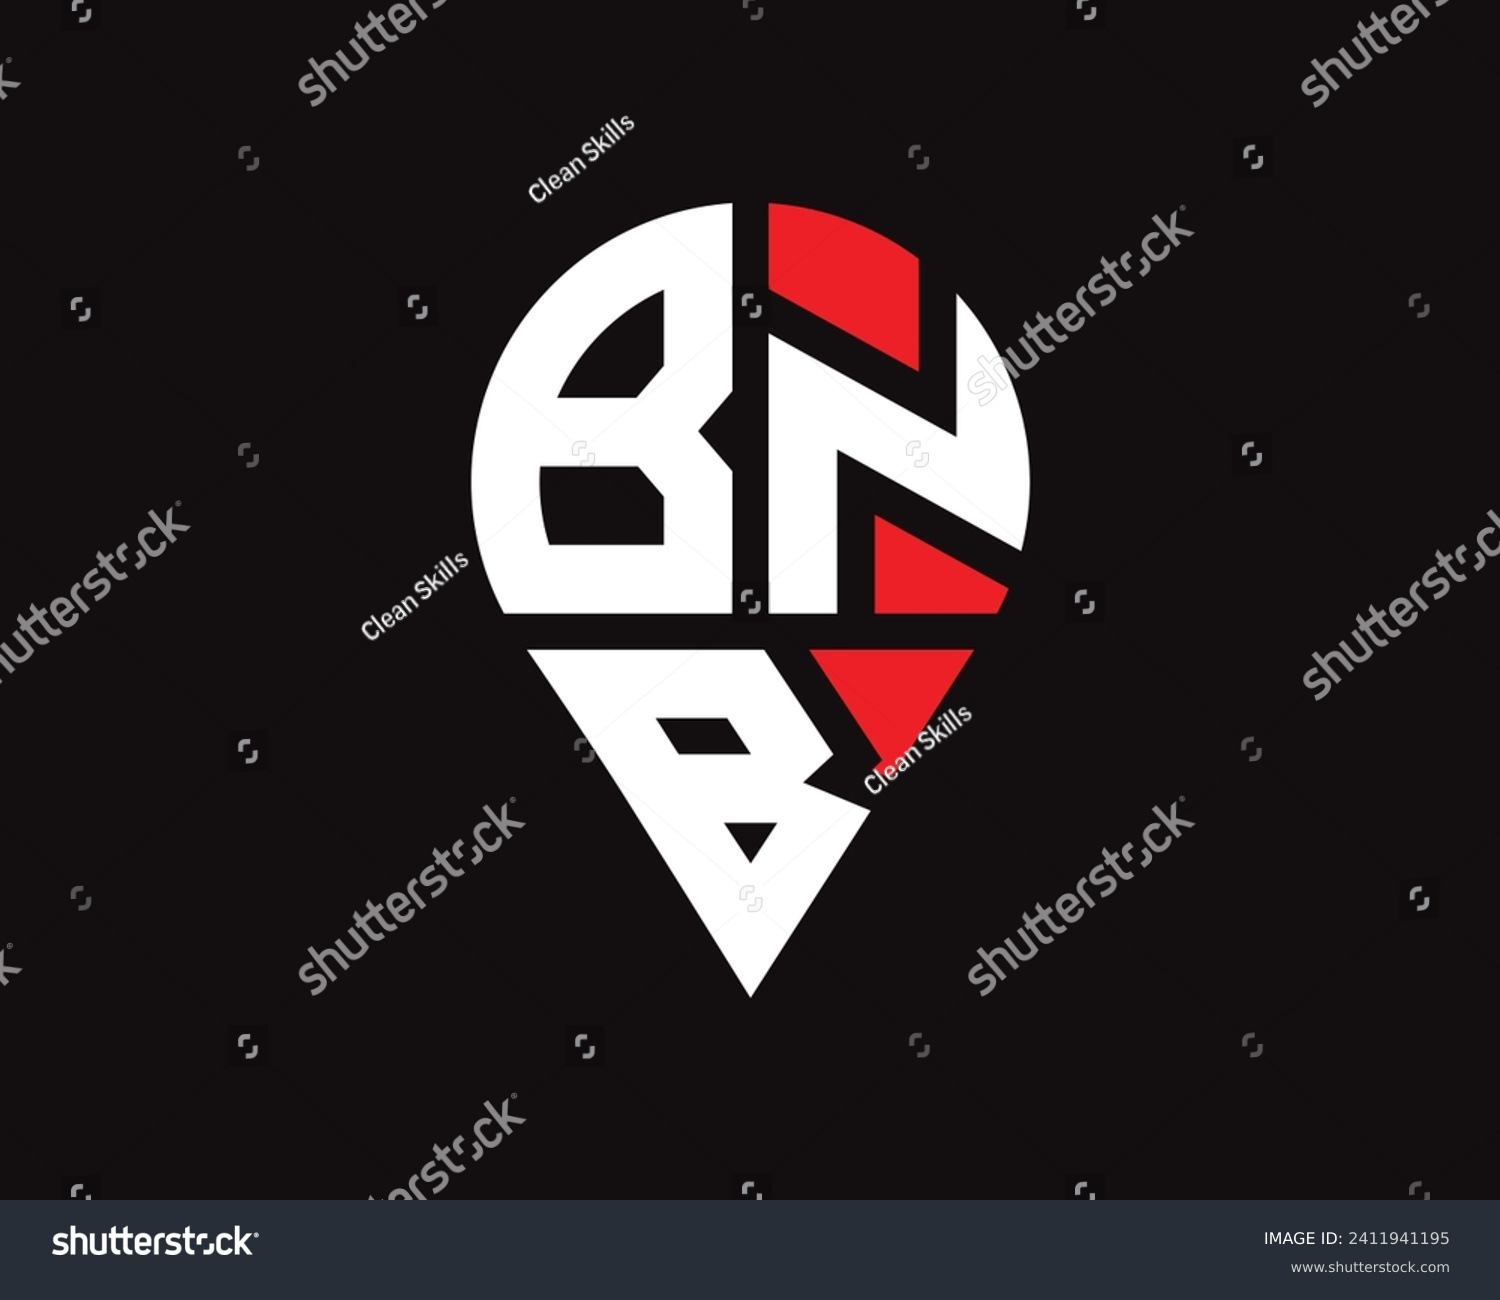 SVG of BNB letter location shape logo design svg